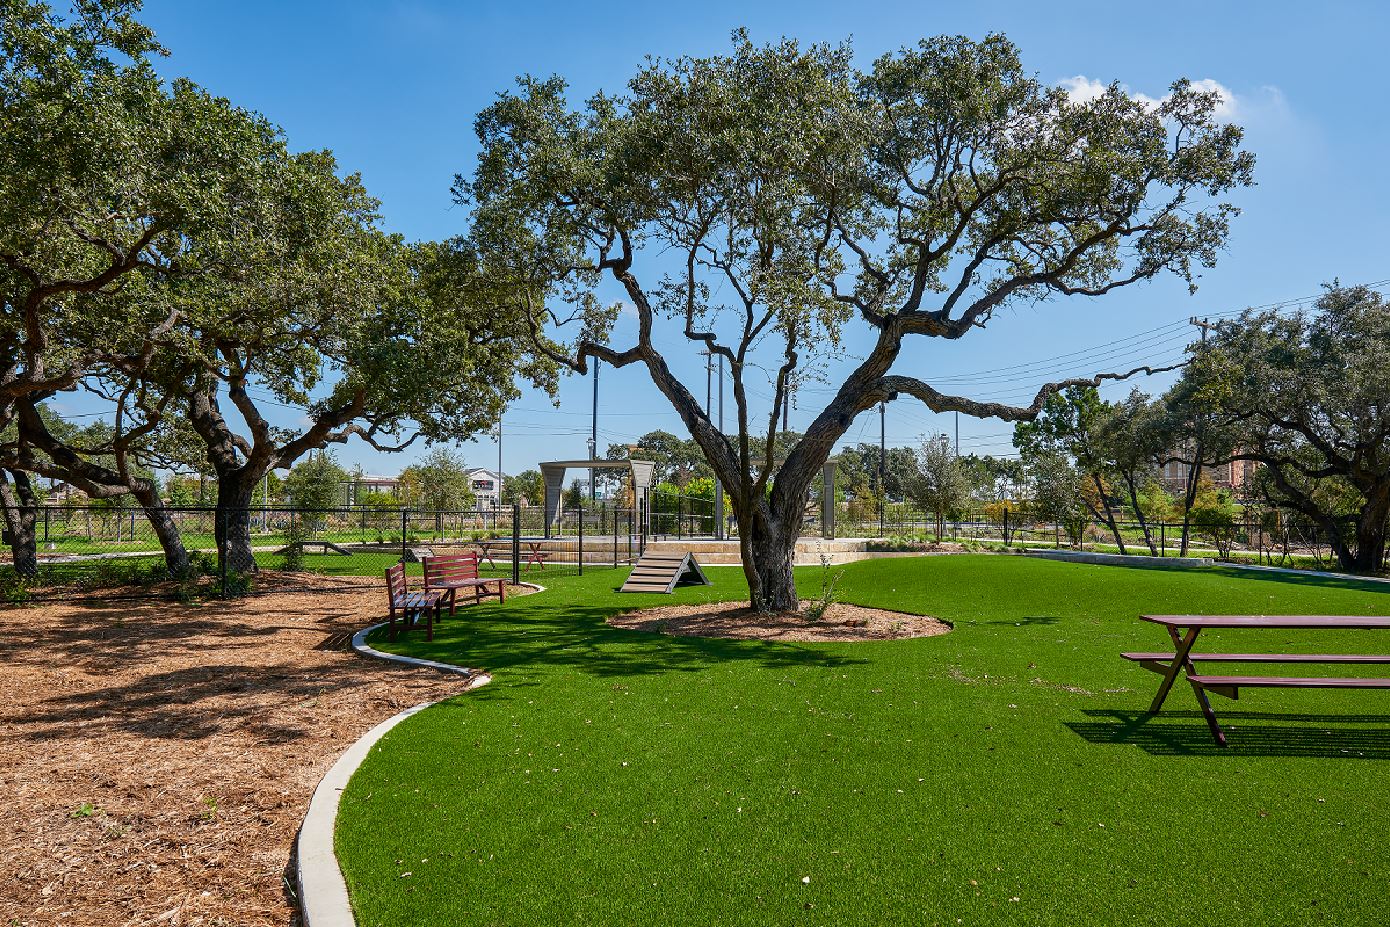 Parque para perros La Cantera con césped, mesas de picnic, bancos y árboles de sombra